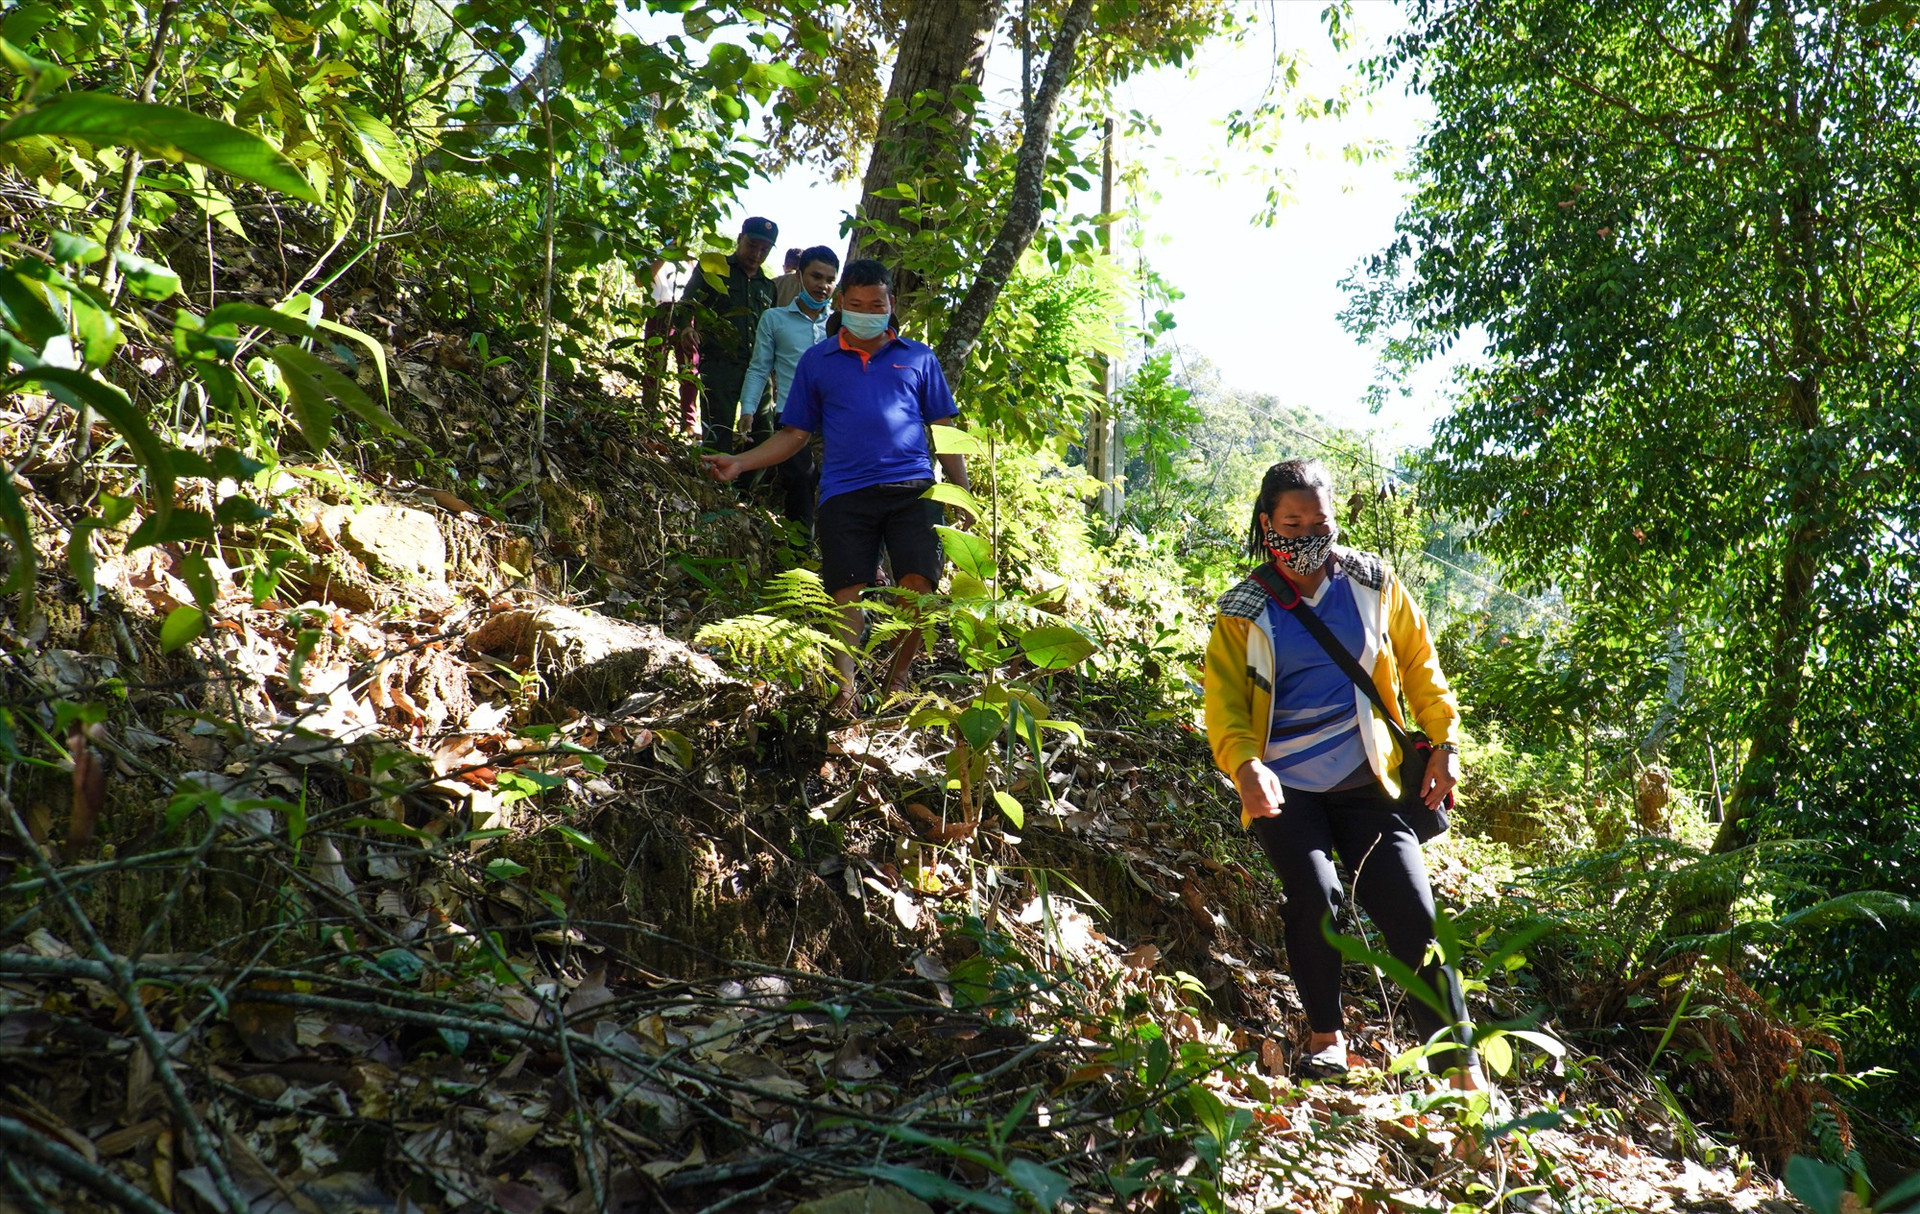 Các cộng đồng tại huyện Tây Giang cùng lực lượng chức năng tuần tra, bảo vệ rừng 4 lần/1 tháng. Ảnh: H.Q